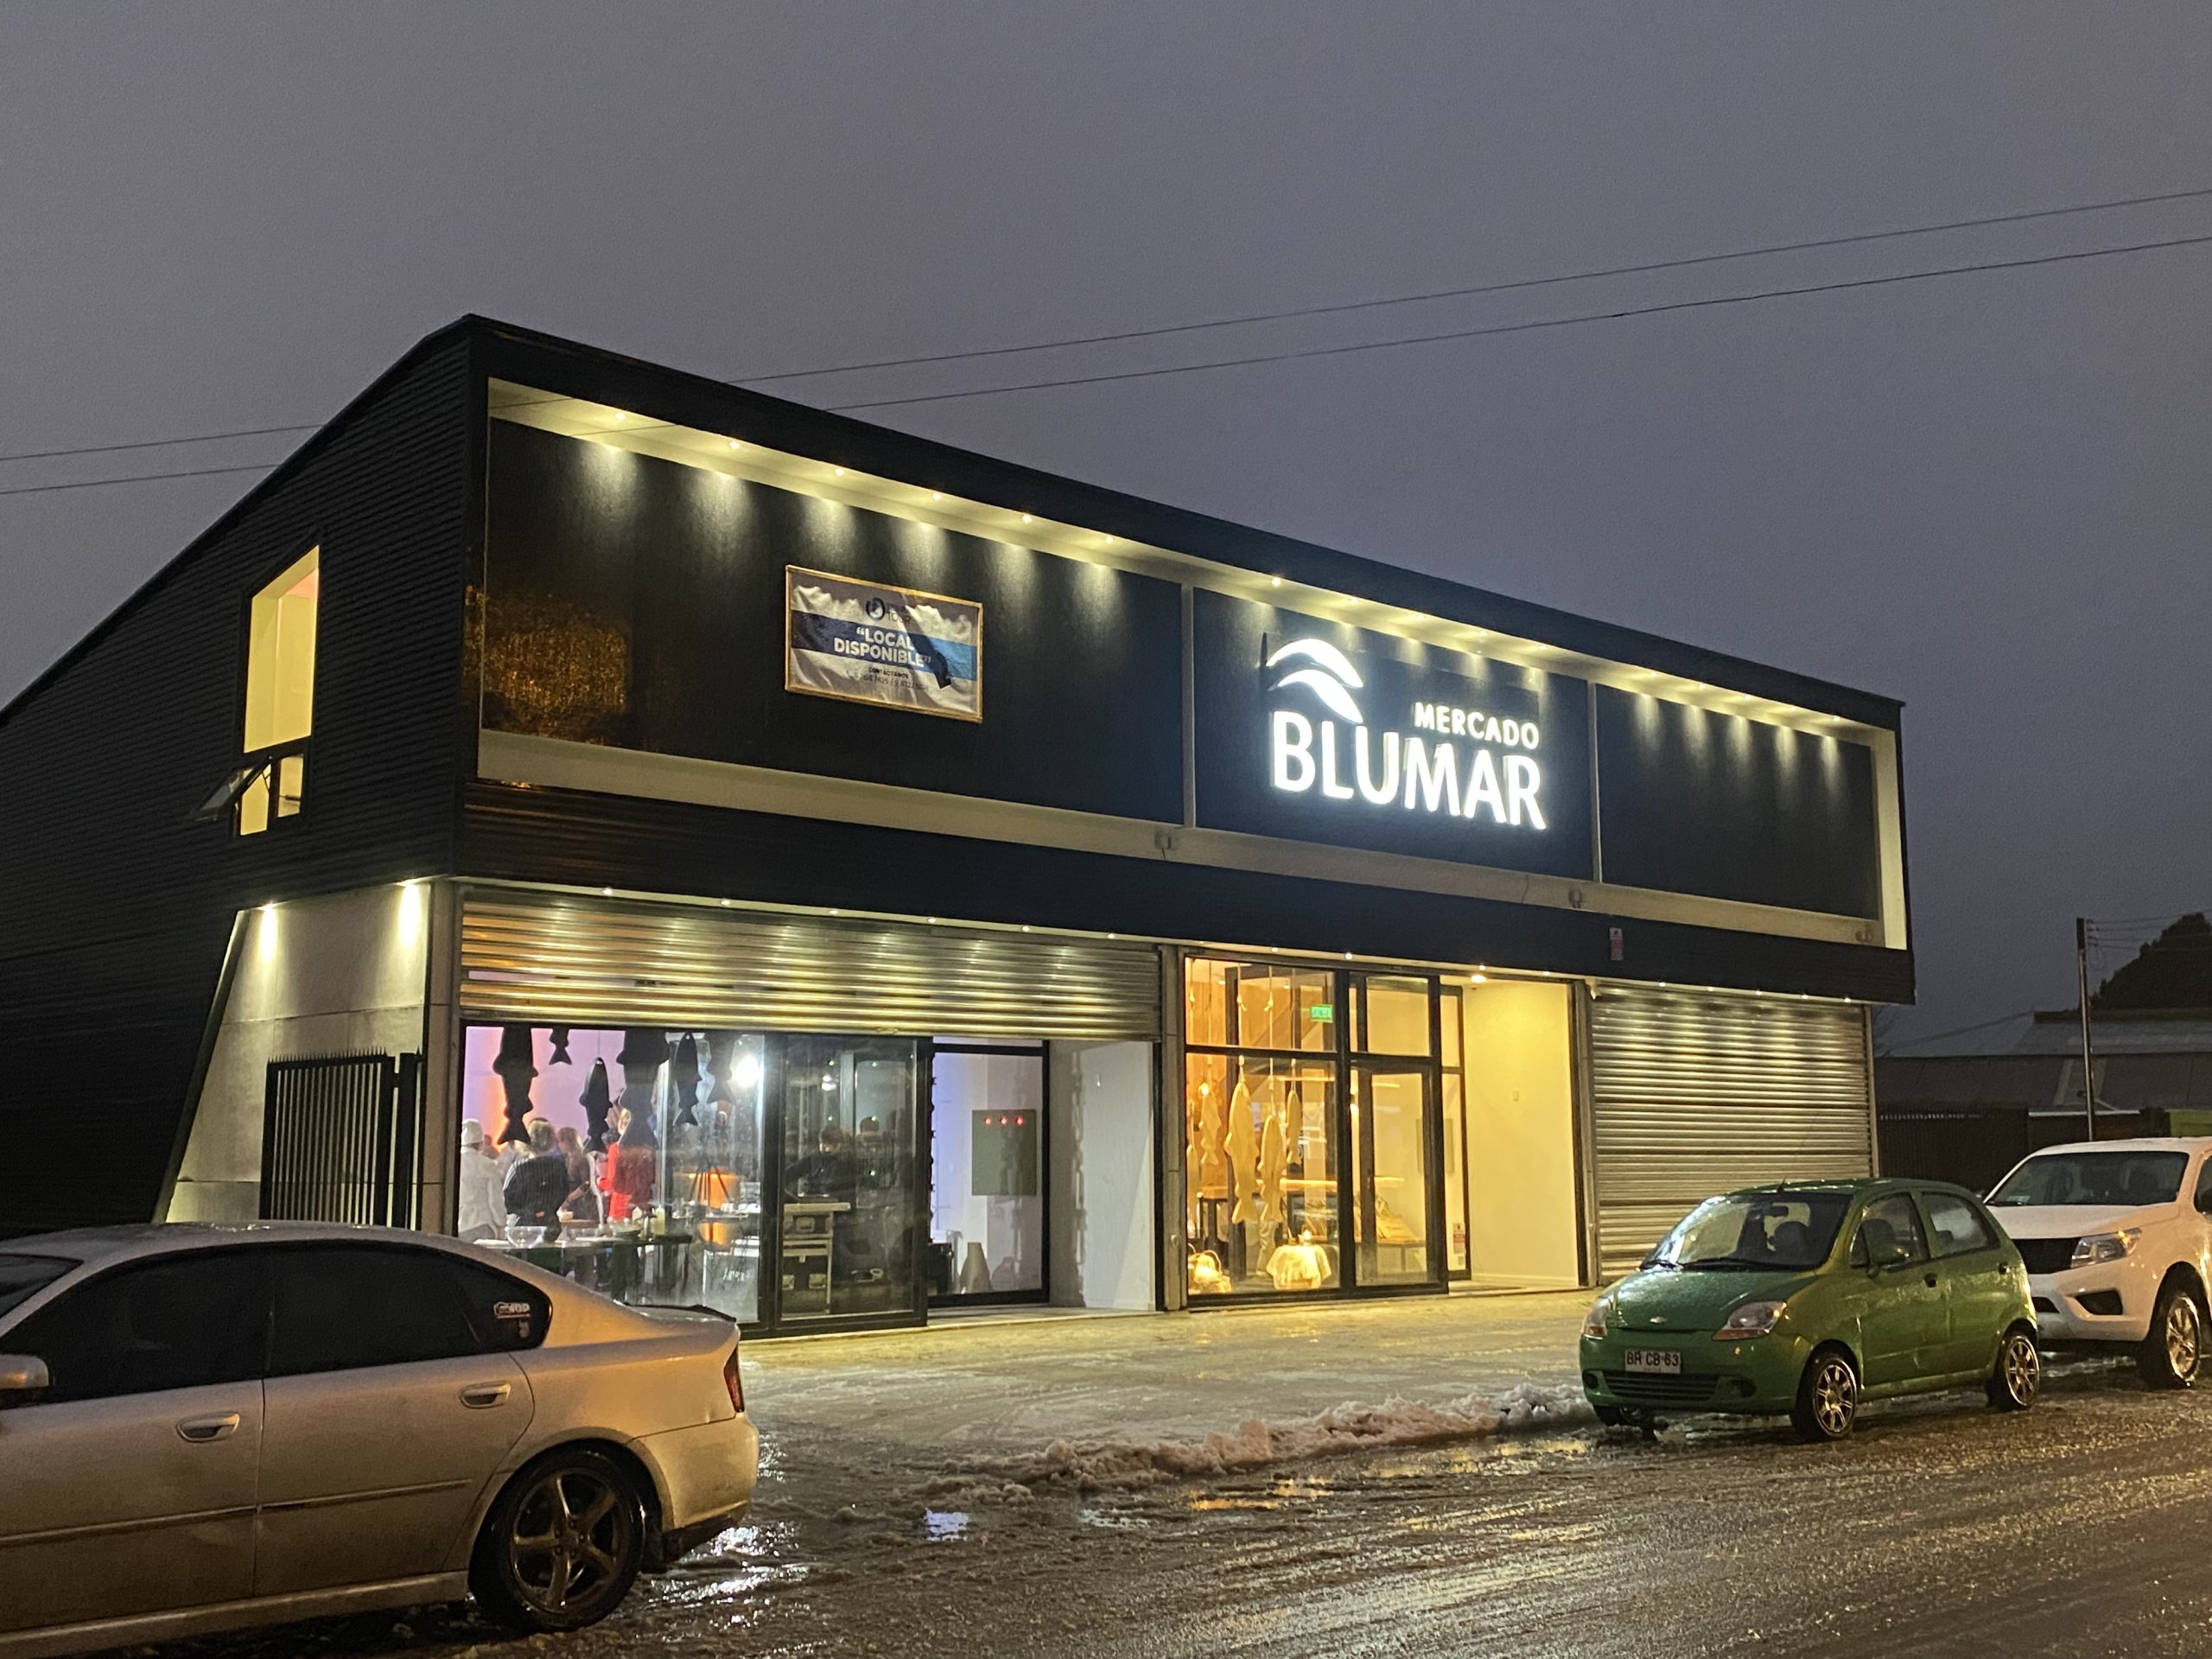 Blumar inaugura “Mercado Blumar”, la primera tienda y centro de experiencia de la empresa